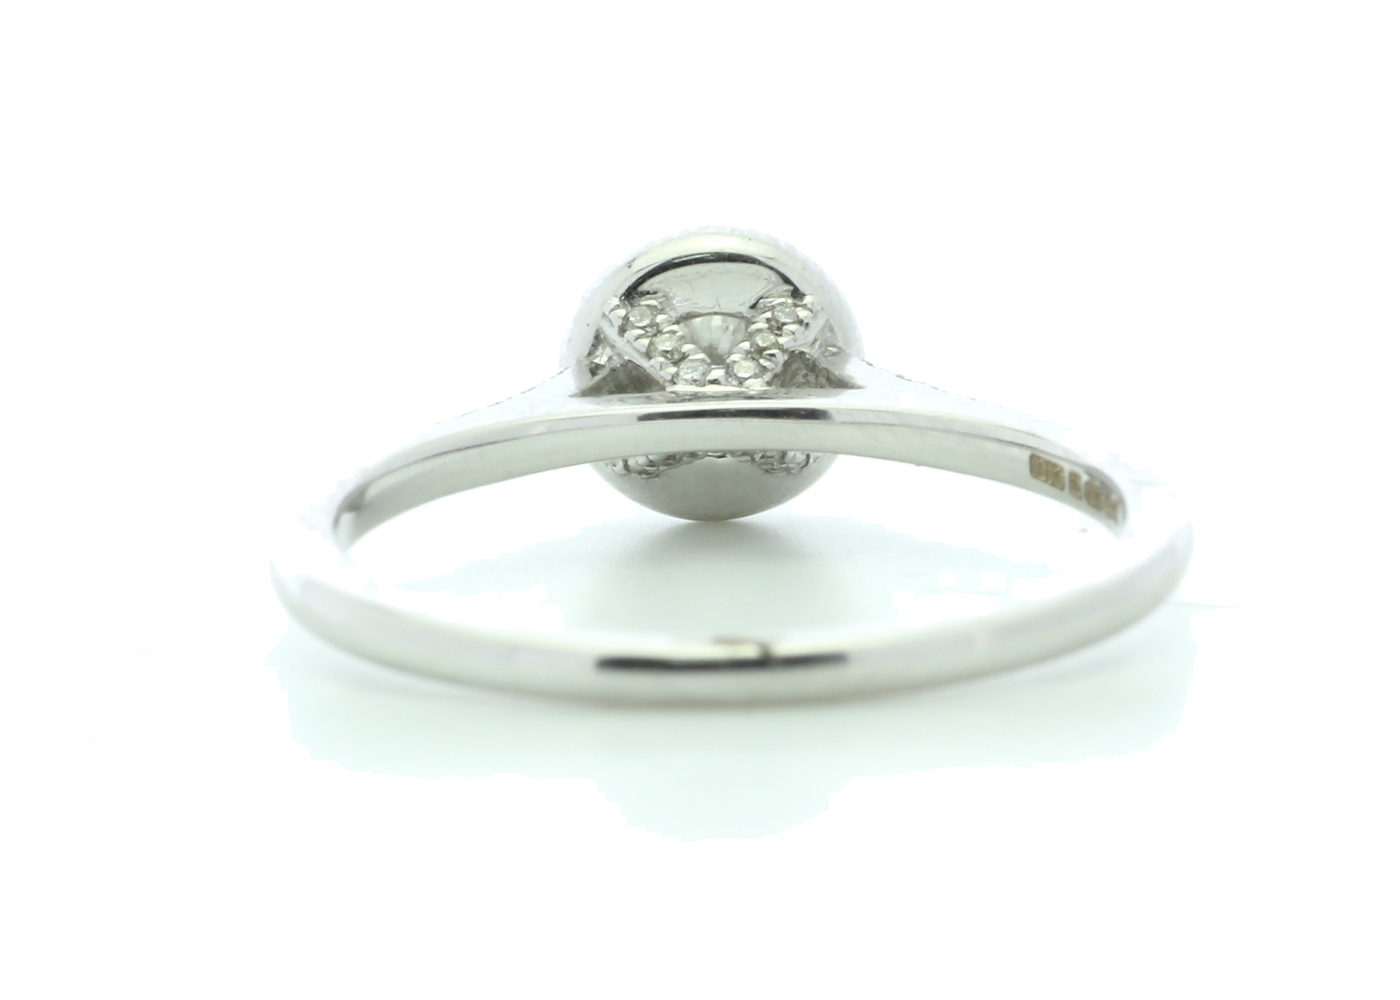 18k White Gold Halo Set Diamond Ring 0.38 Carats - Image 3 of 5